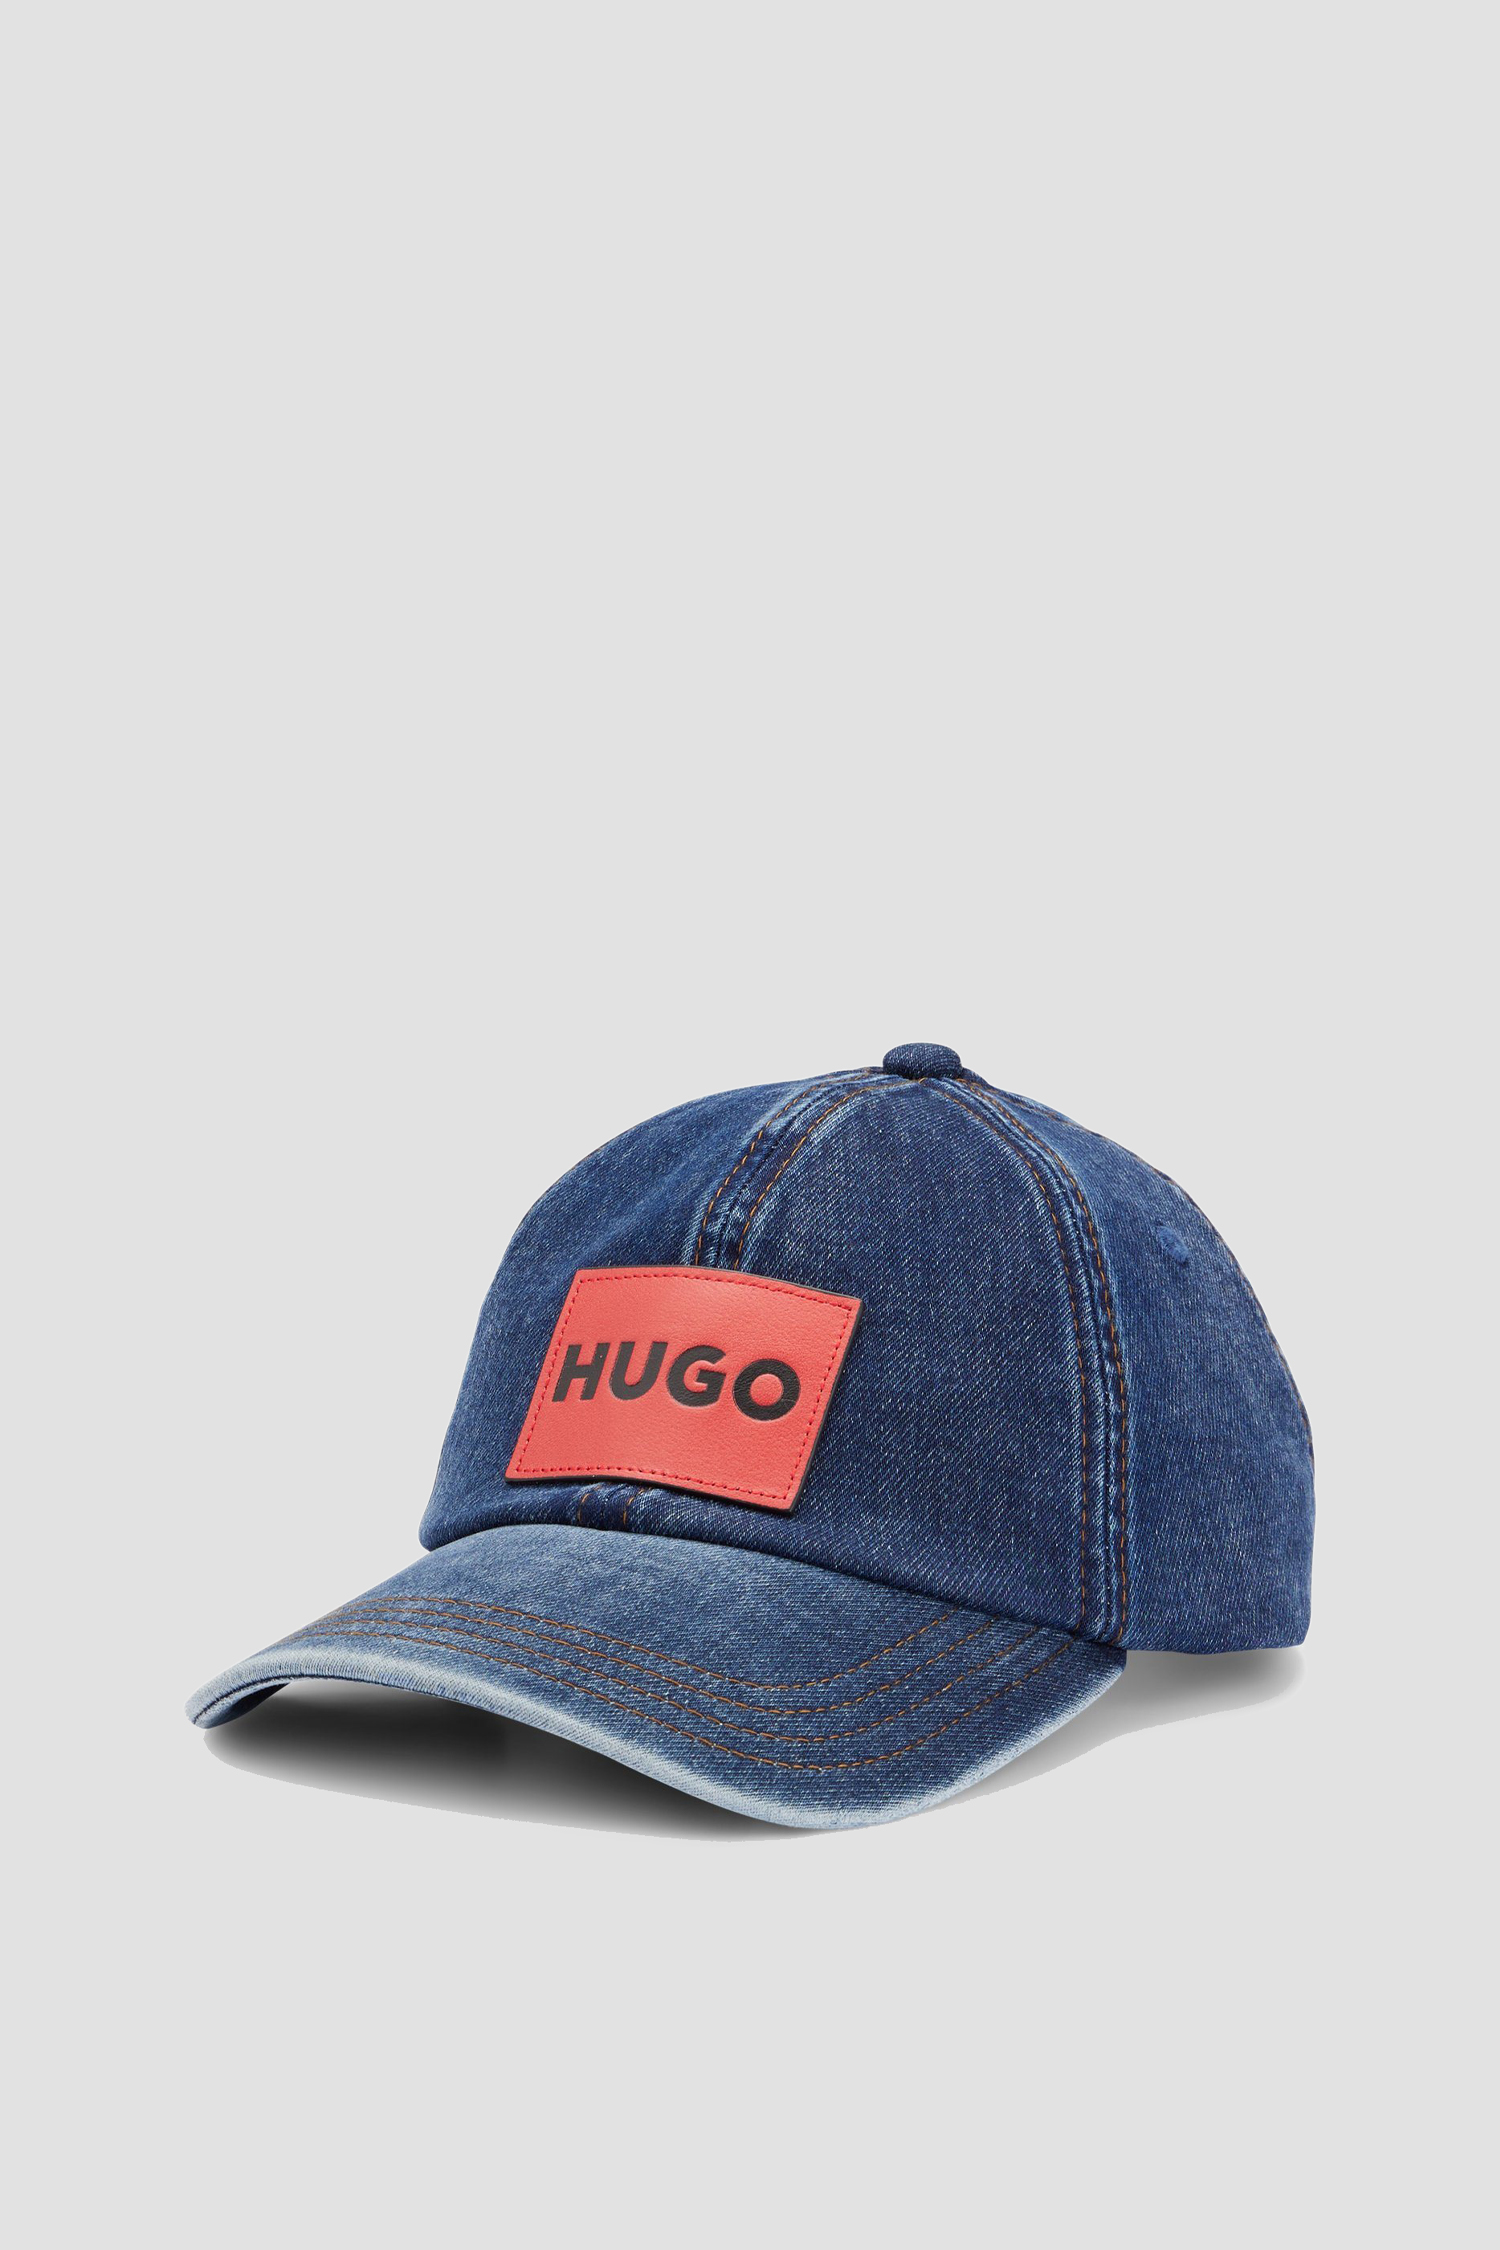 Мужская синяя джинсовая кепка HUGO 50484564;424